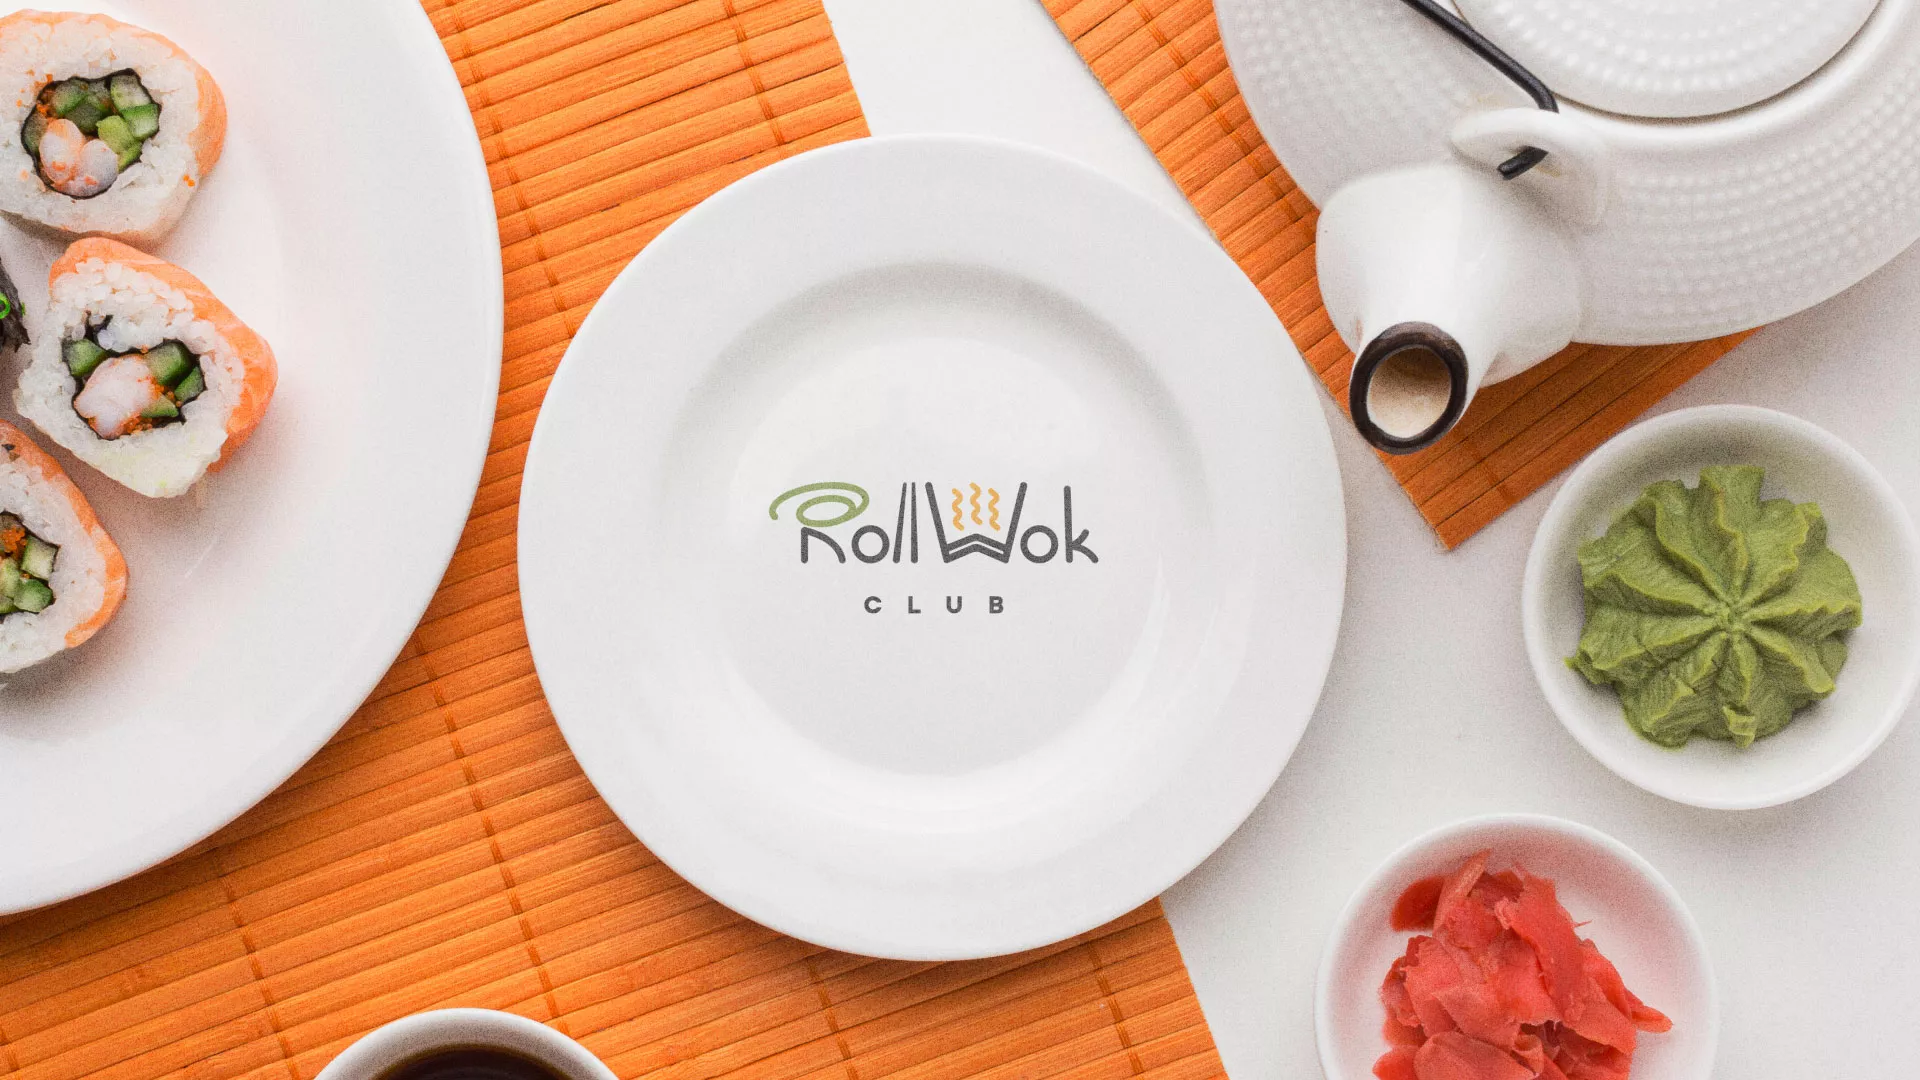 Разработка логотипа и фирменного стиля суши-бара «Roll Wok Club» в Болохово